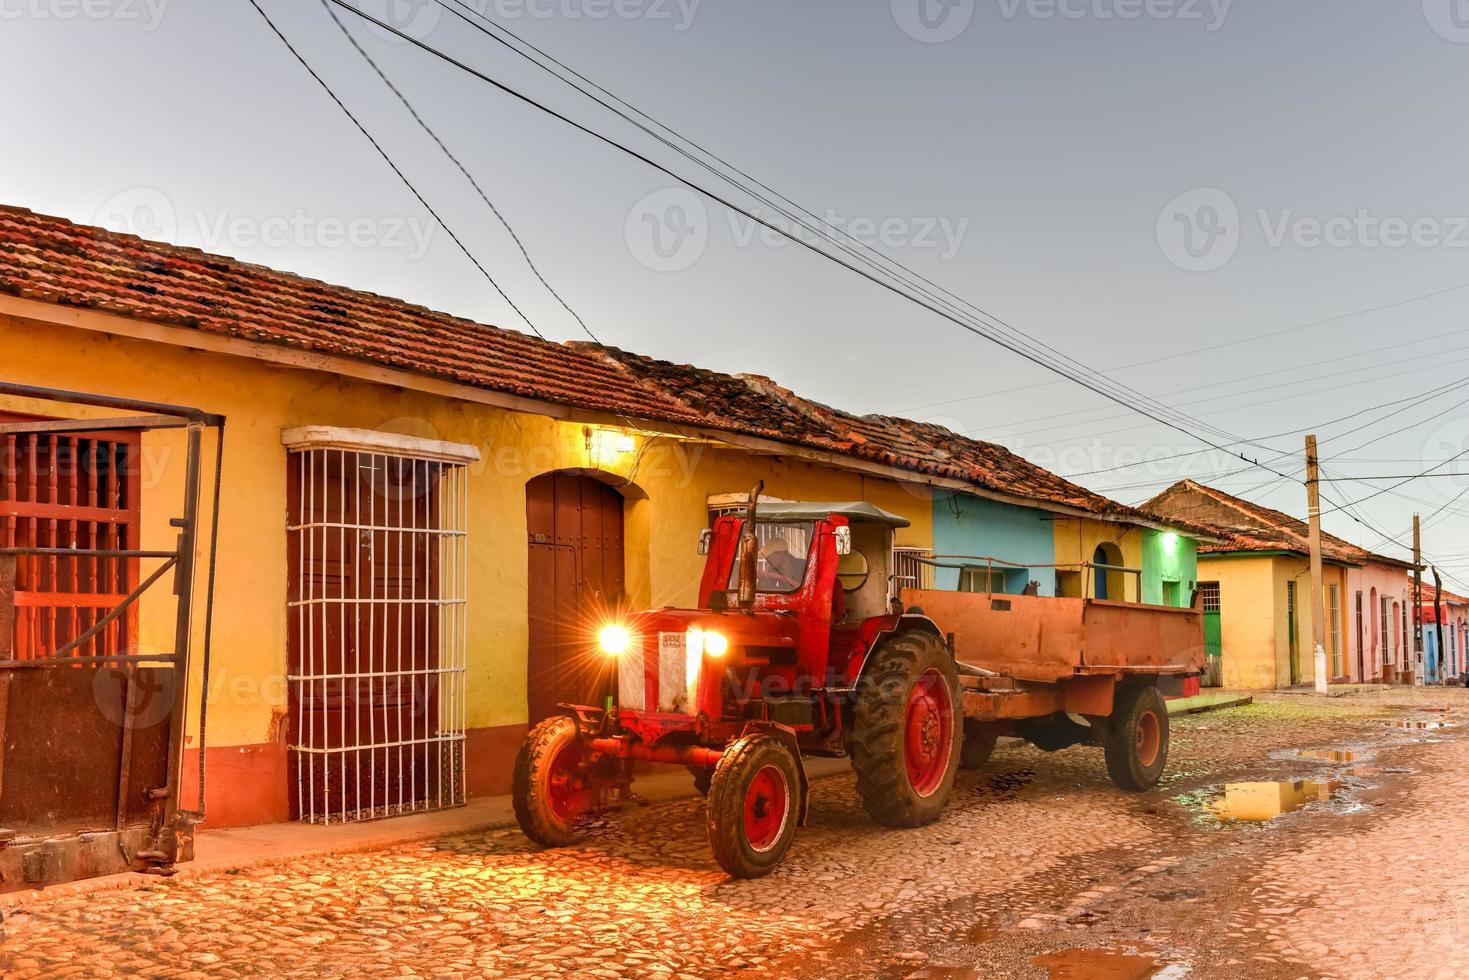 colorato tradizionale case nel il coloniale cittadina di trinidad nel Cuba, un' unesco mondo eredità luogo. foto